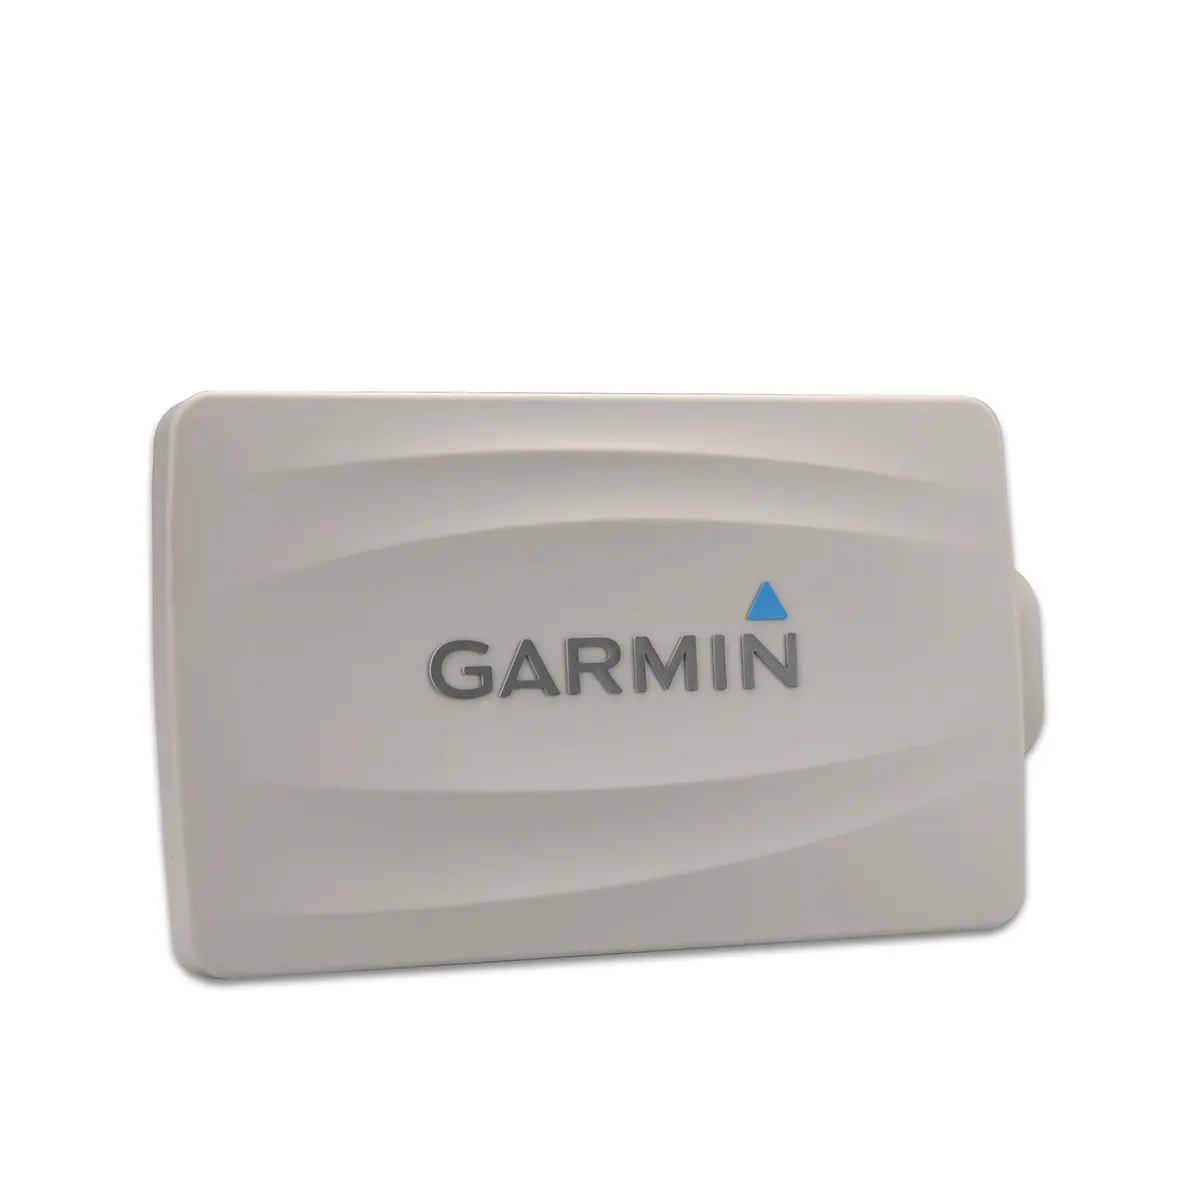 garmin protective cover